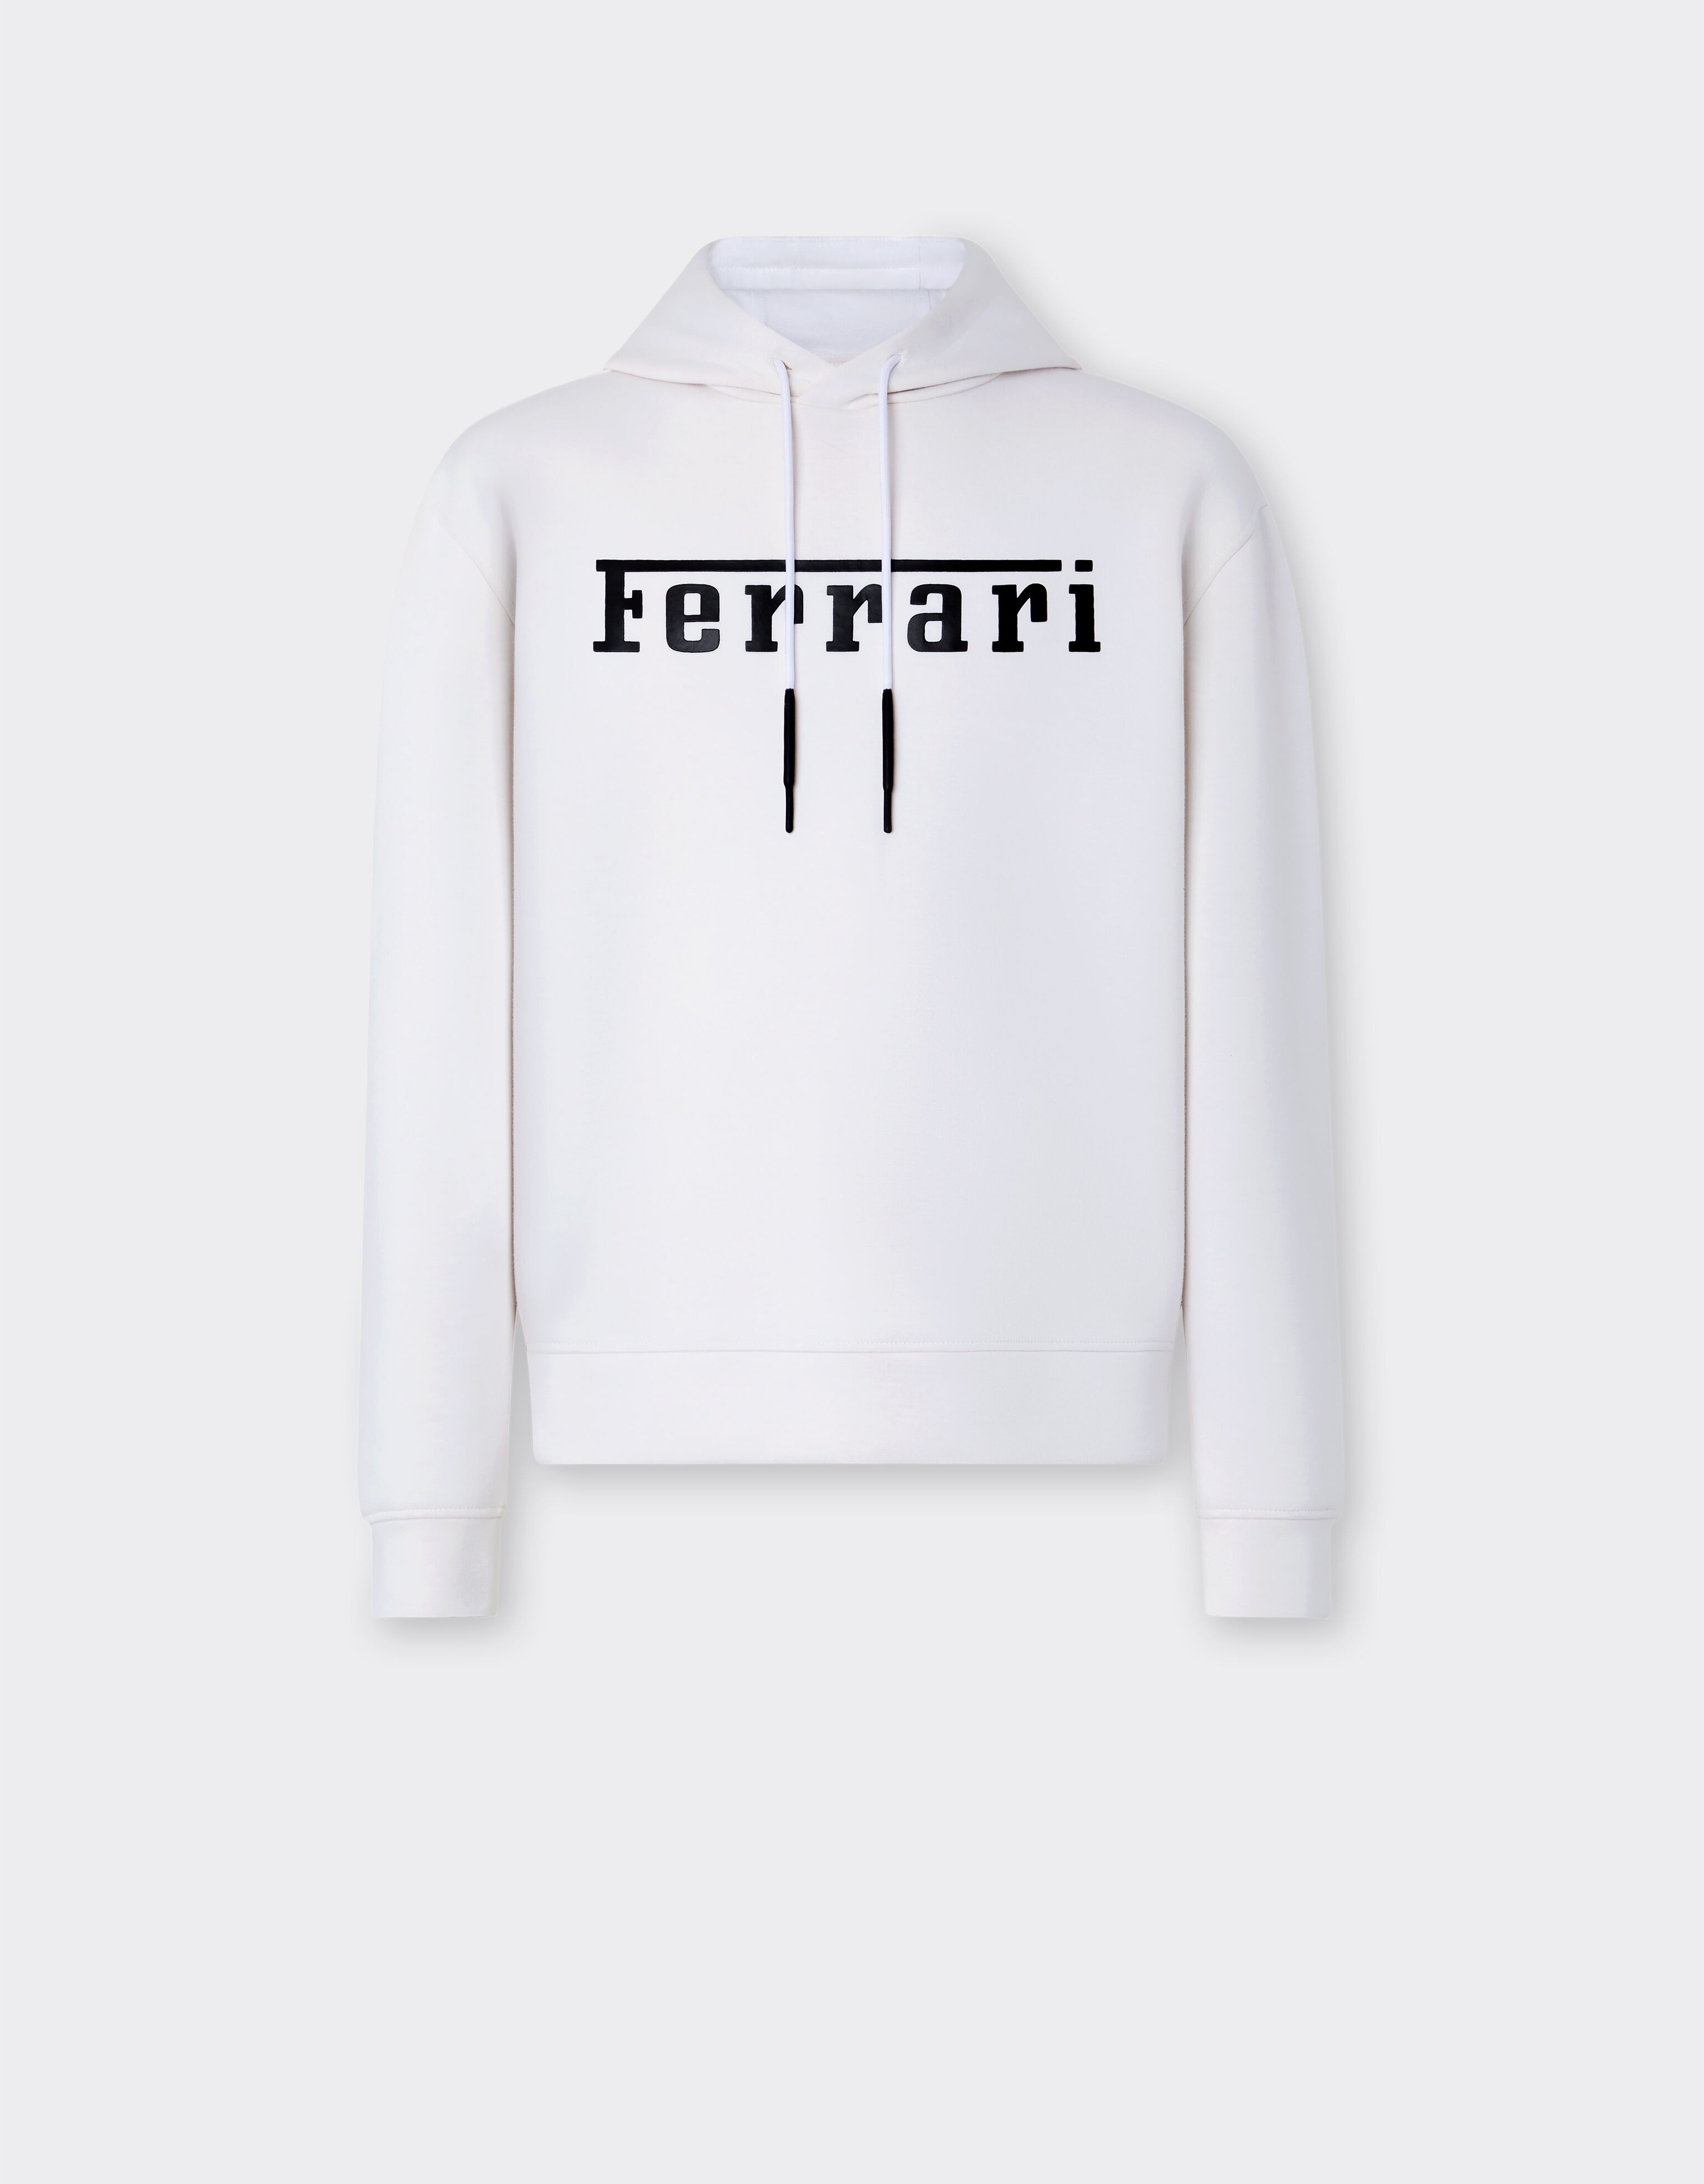 Ferrari Sweatshirt aus Scuba-Gewebe mit Ferrari-Logo in Kontrastoptik Optisch Weiß 47819f